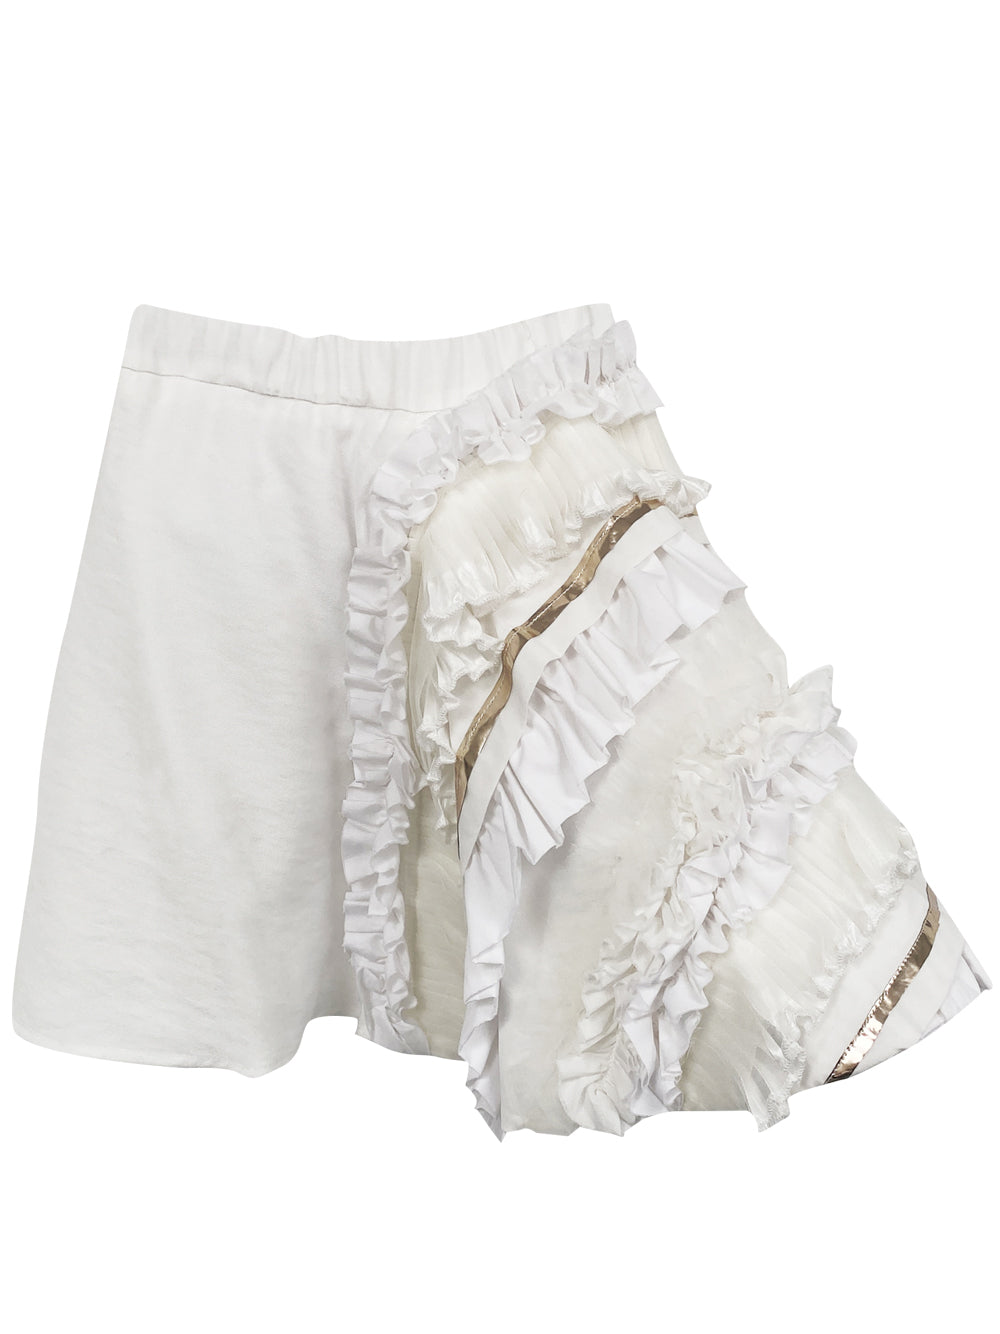 PREORDER: Tia White Ruffle Skirt